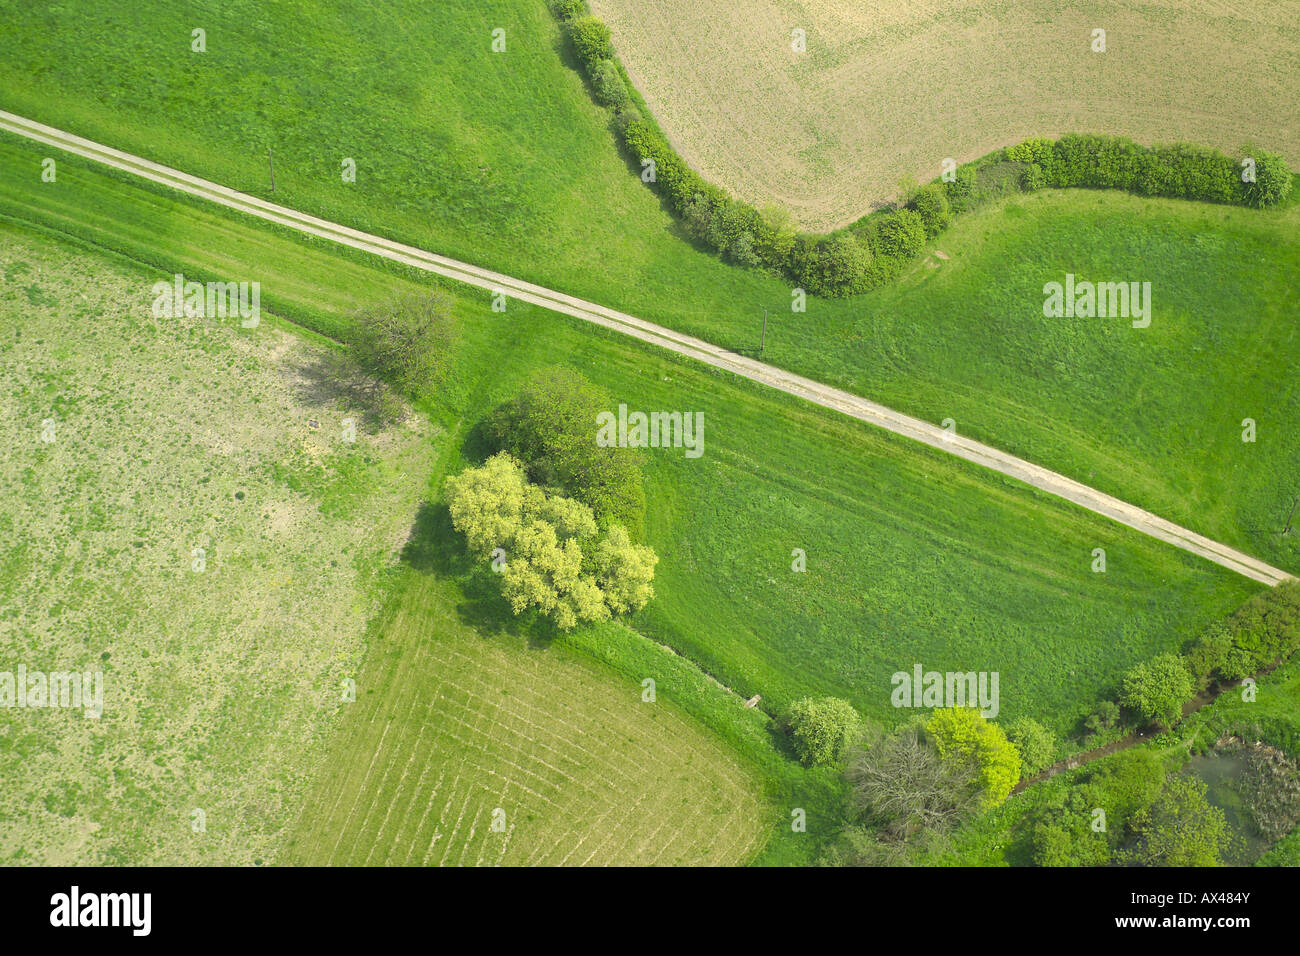 Vista aérea de una granja en la pista junto a un seto y algunos árboles Foto de stock